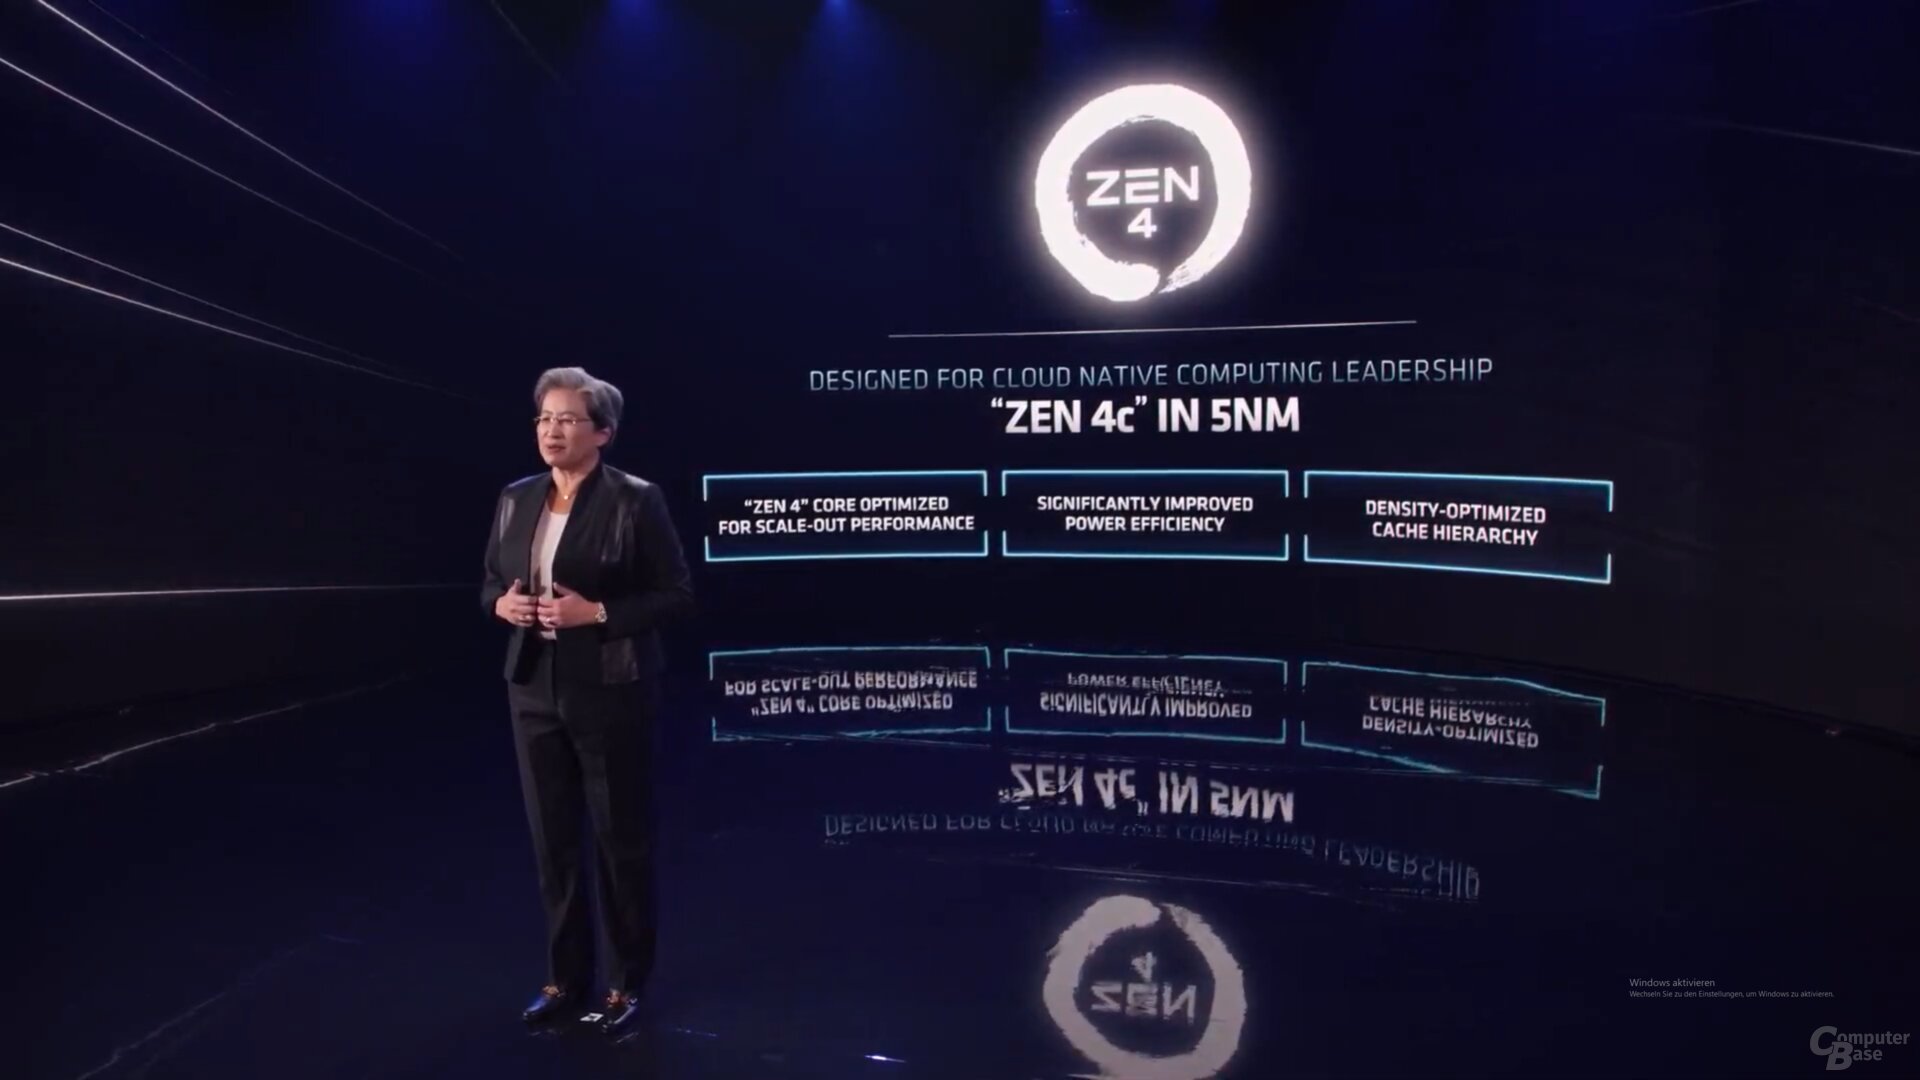 Zen 4 in 5 nm, vermutlich TSMC N5P